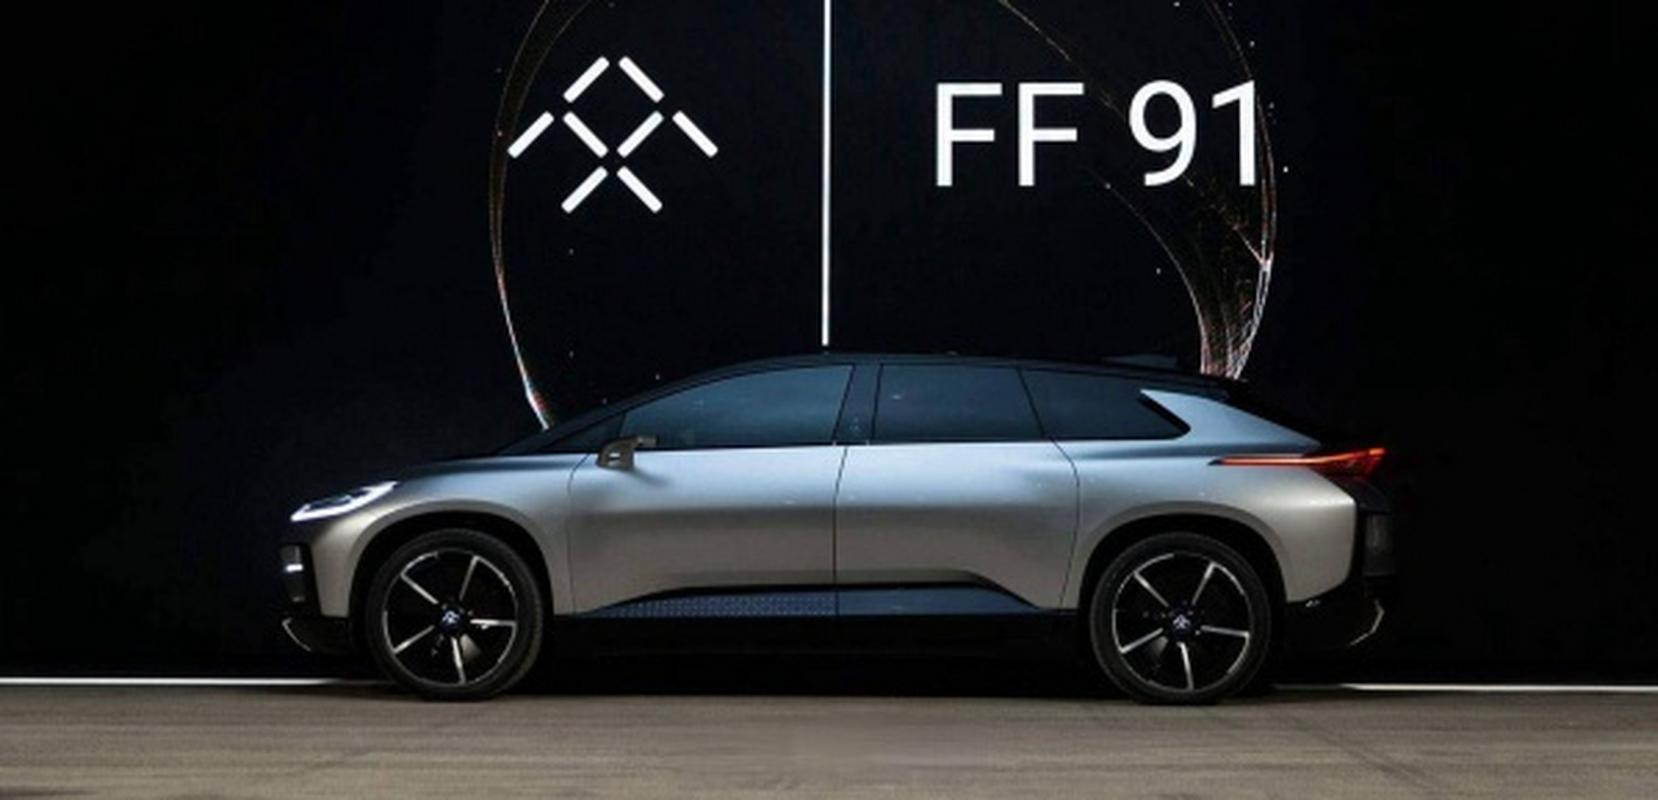 法拉第未来首款豪华电动汽车产品ff 91的合规认证工作正在按计划进行.